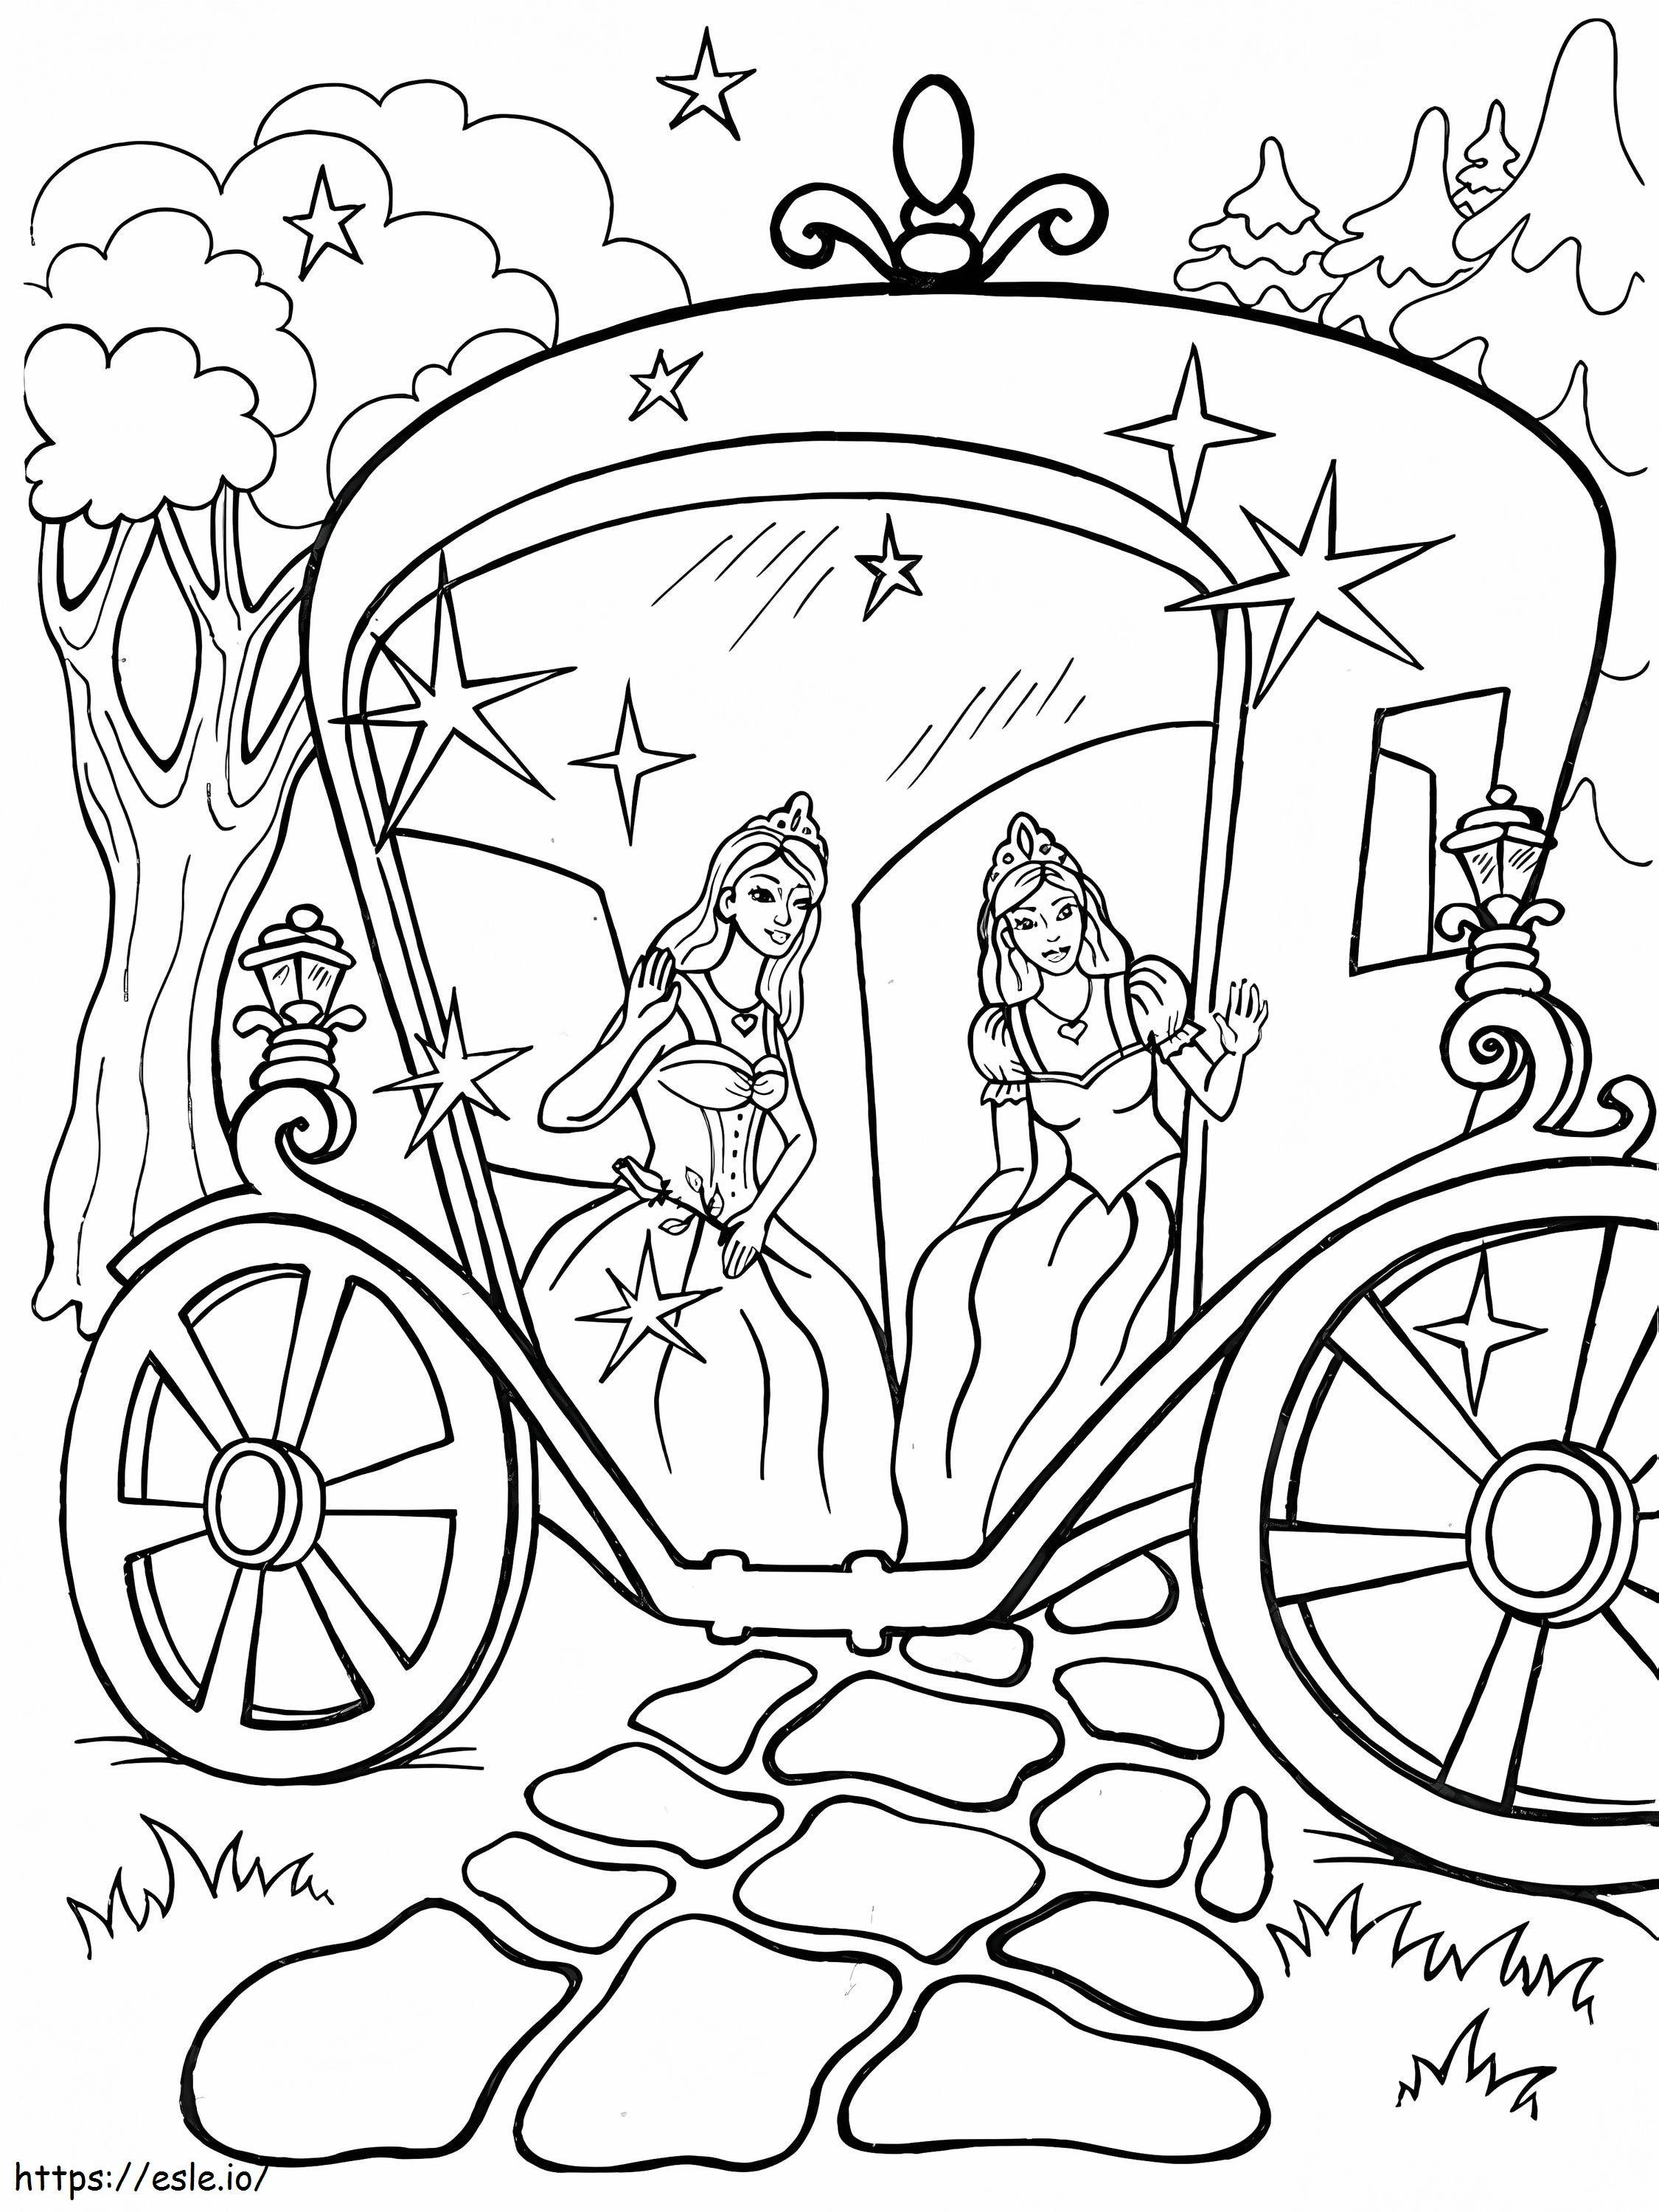 Princesas em uma carruagem para colorir